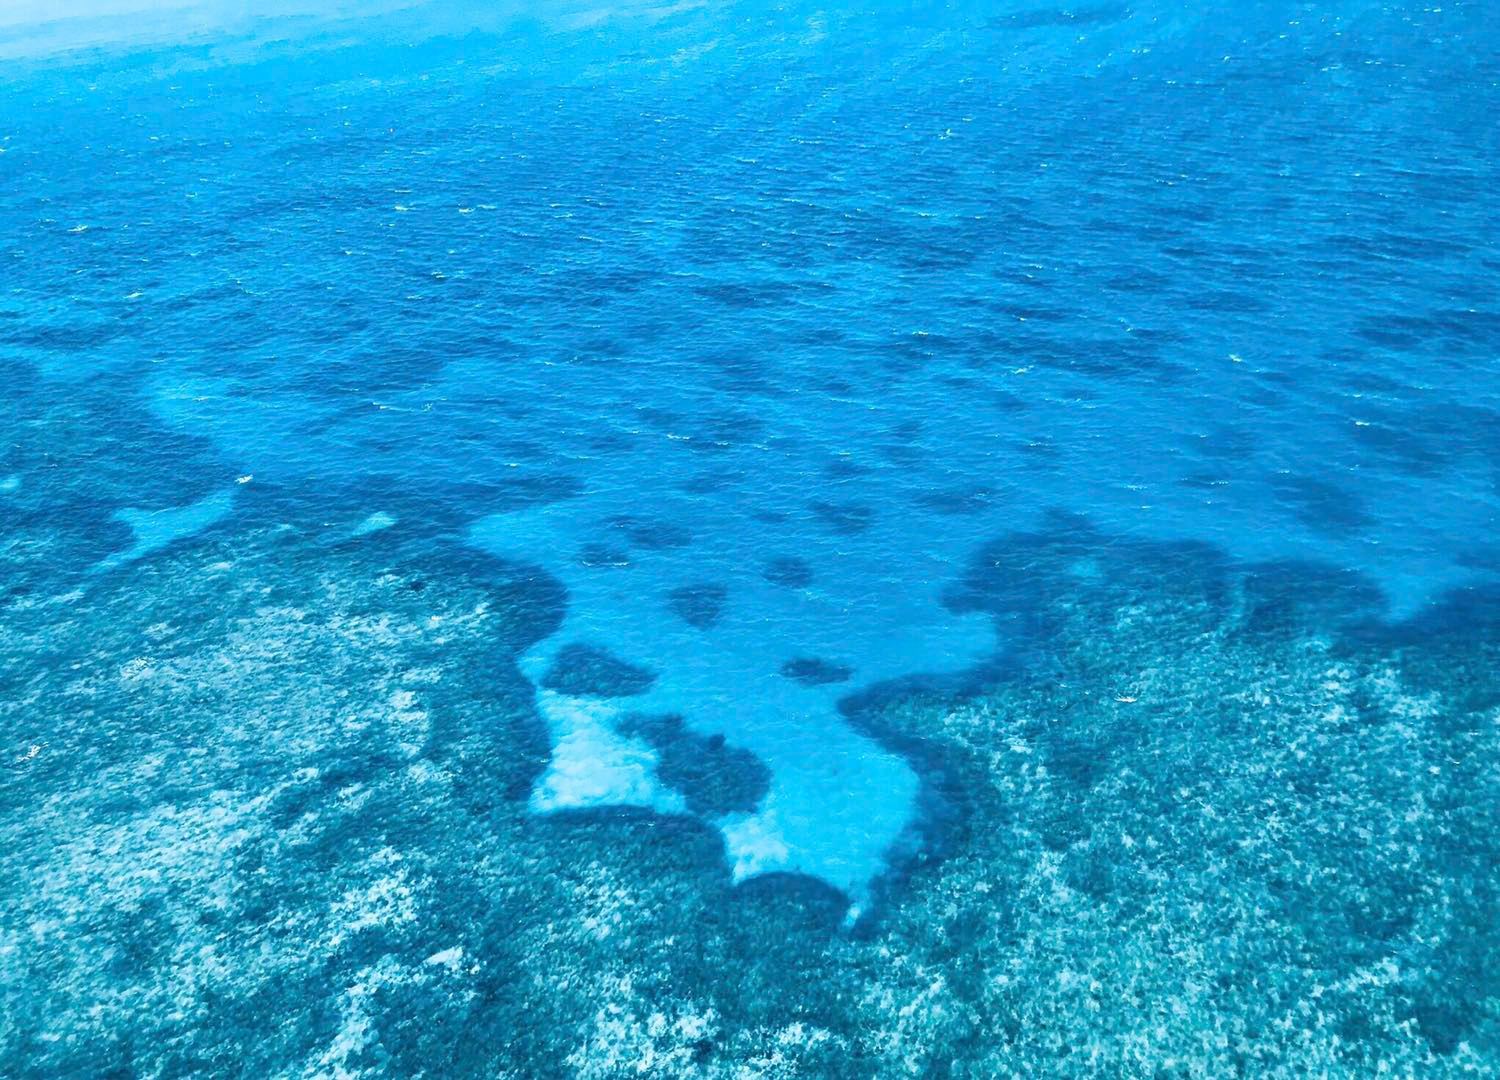 潜入深蓝 看看大堡礁海底长什么样_搜狐旅游_搜狐网